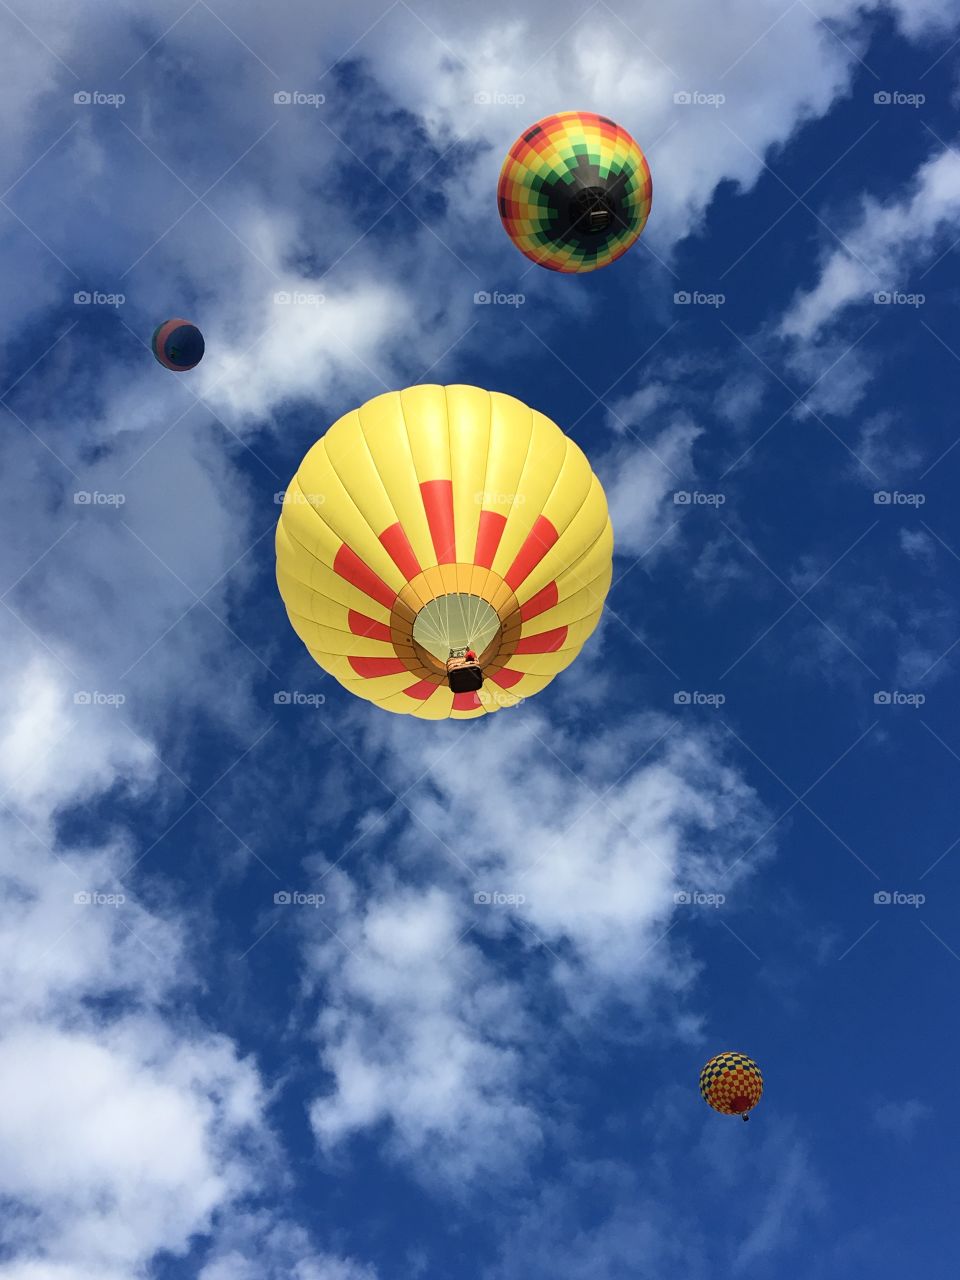 Balloon Fiesta 2018, Albuquerque, NM